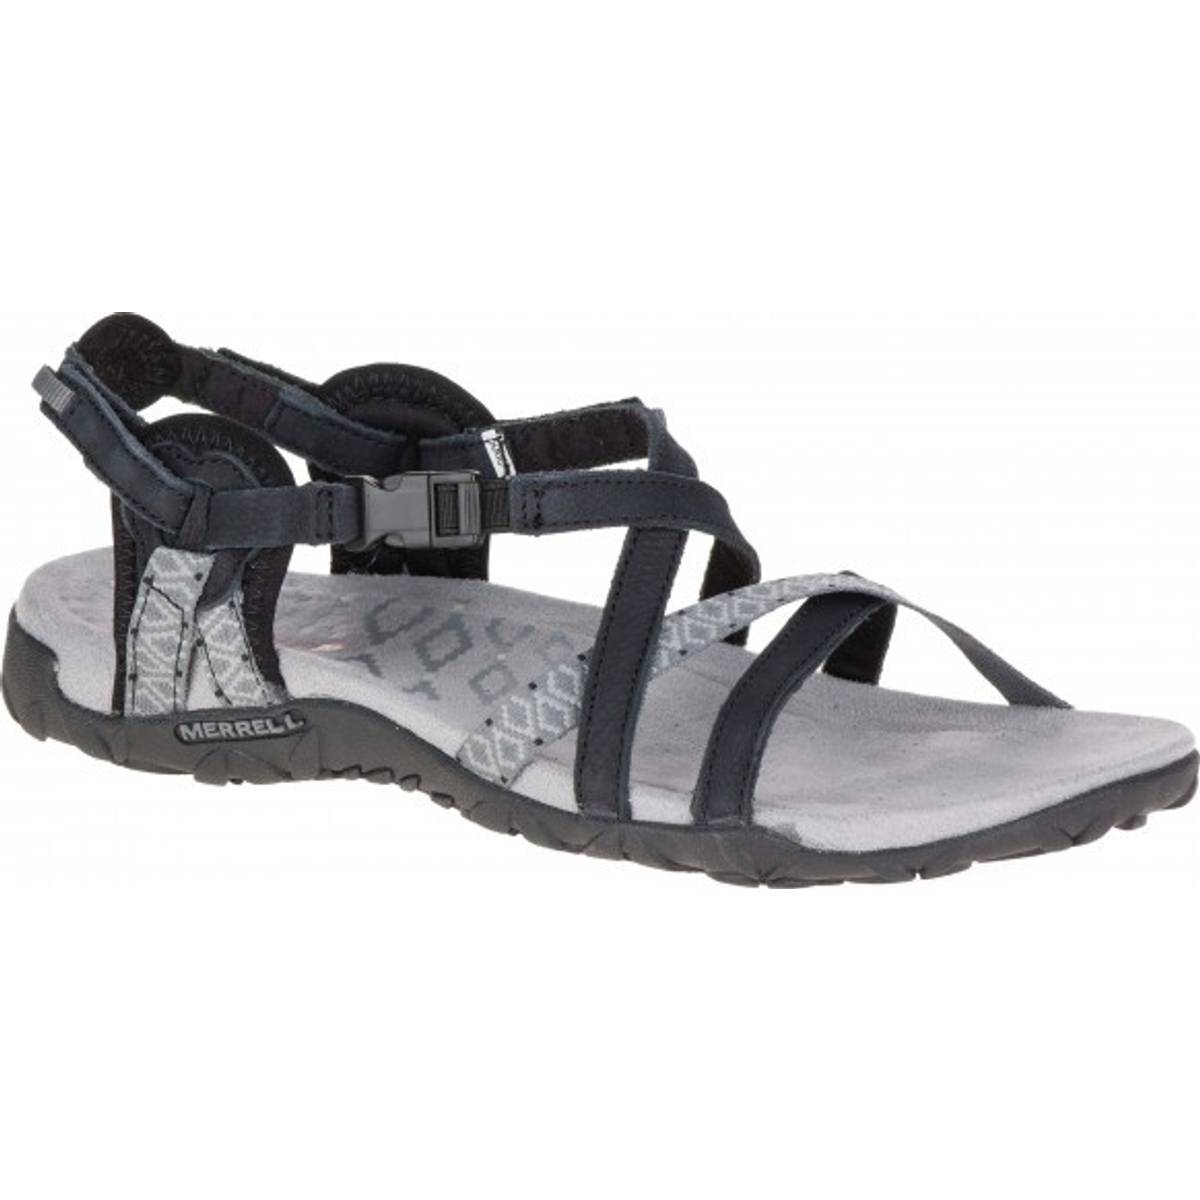 Merrell sandaler | Find sommersko på nettet | CAMPZ.dk